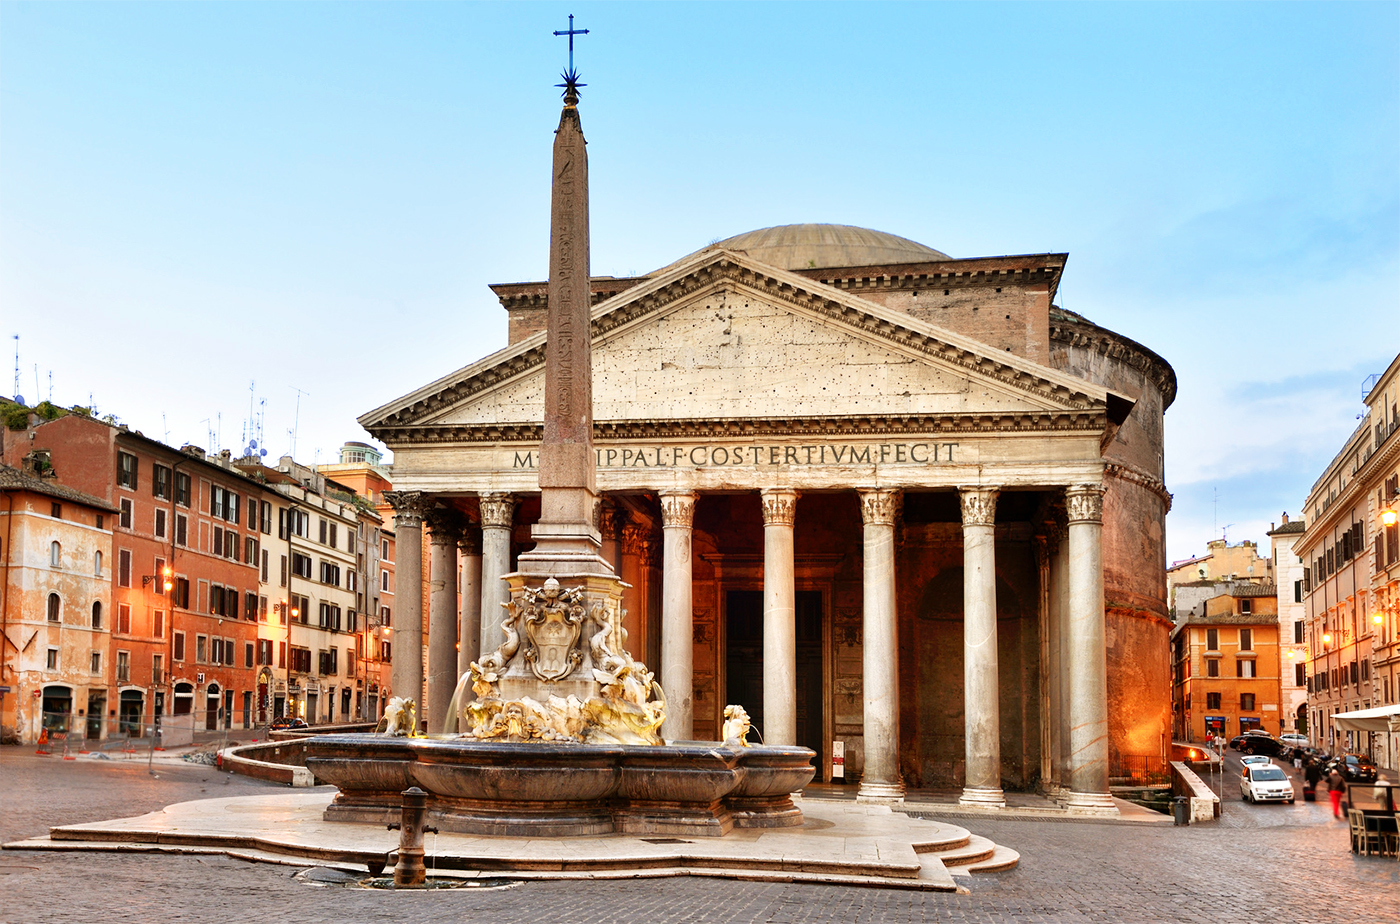 The Pantheon and the beautiful fountain in Piazza della Rotonda, designed by Giacomo Della Porta